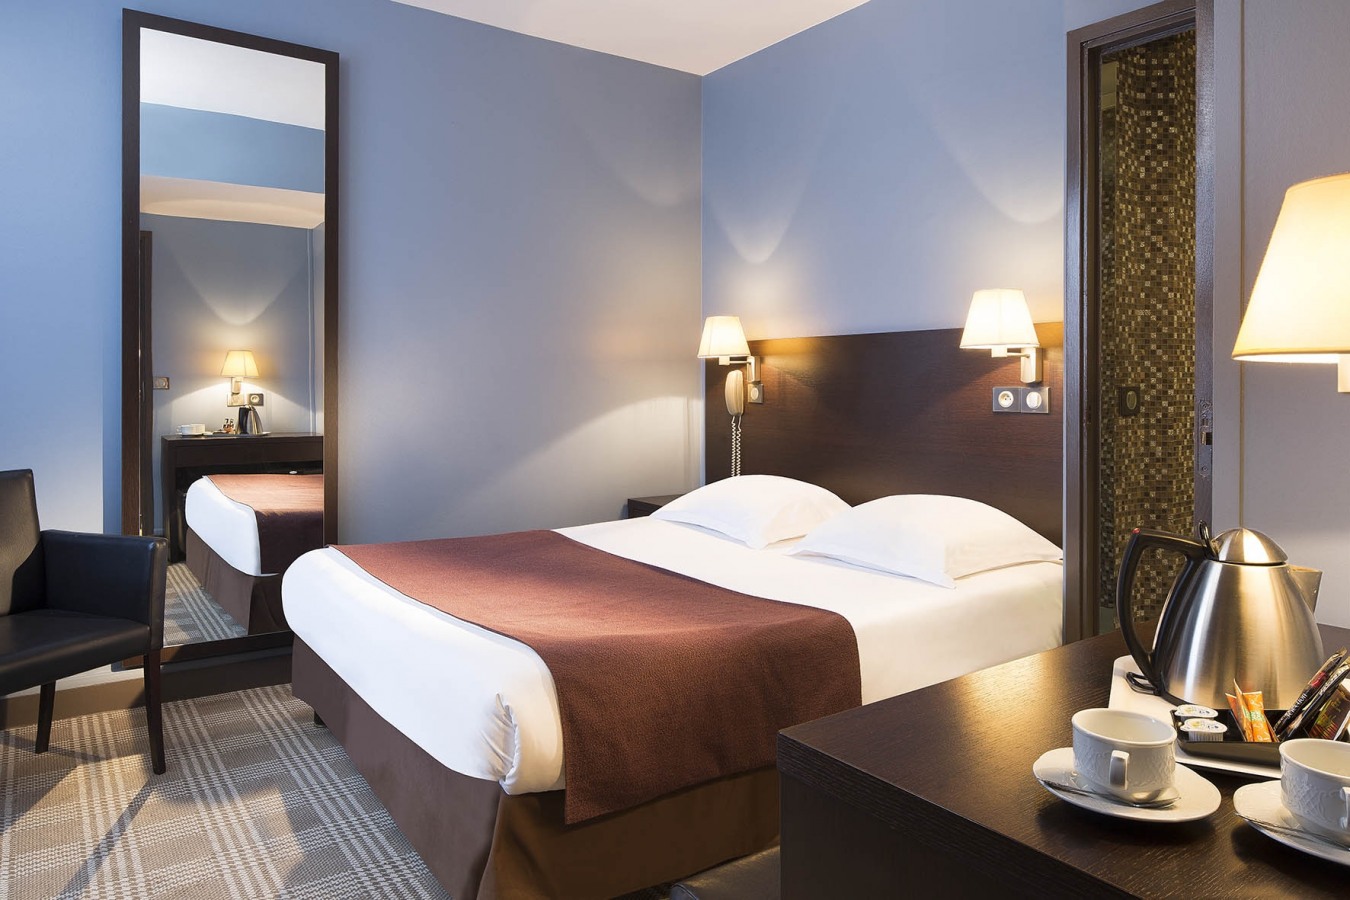 Hotel Sophie Germain - Rooms